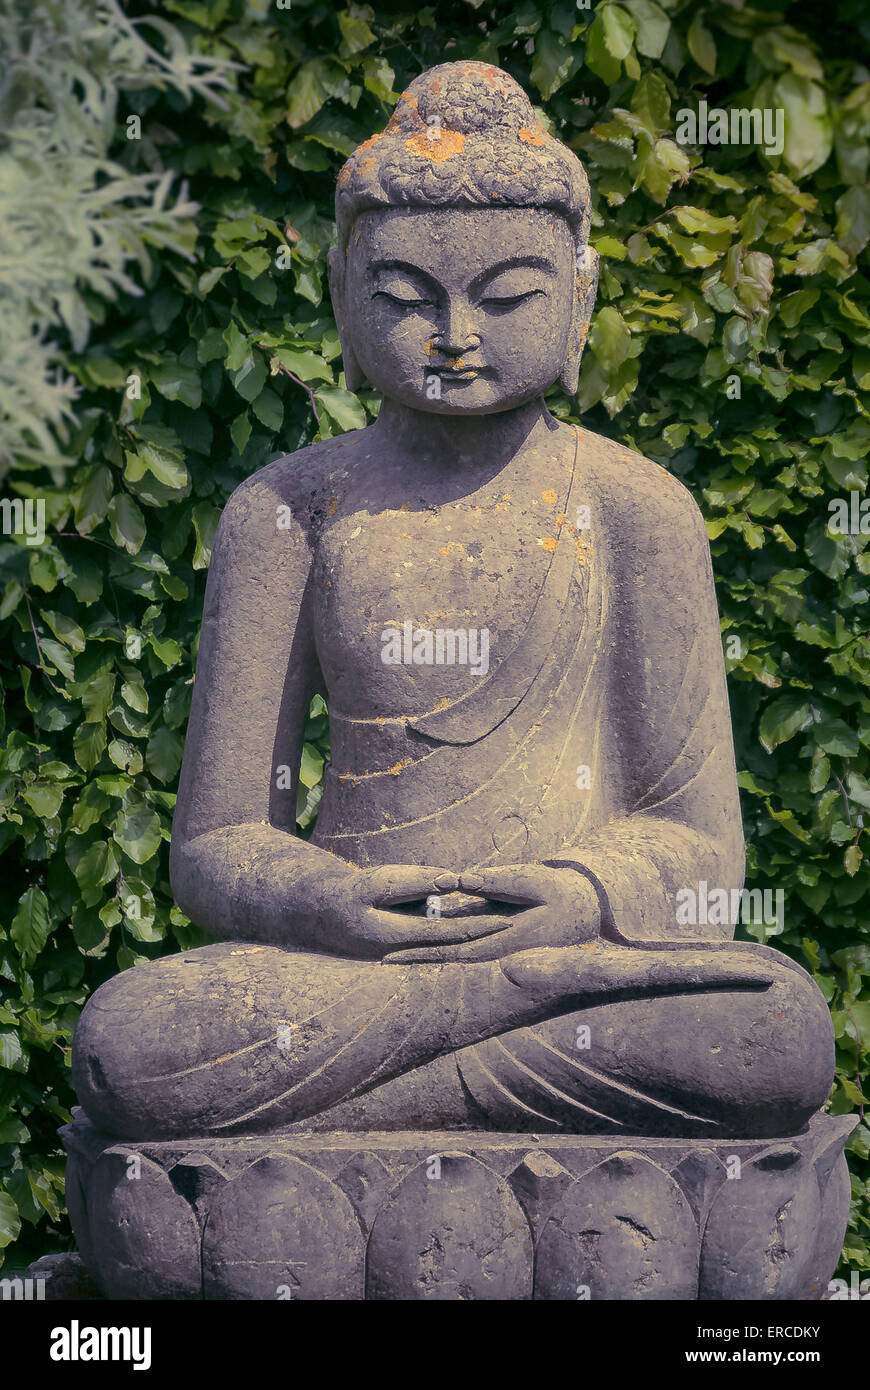 Statua di Buddha in giardino Foto Stock